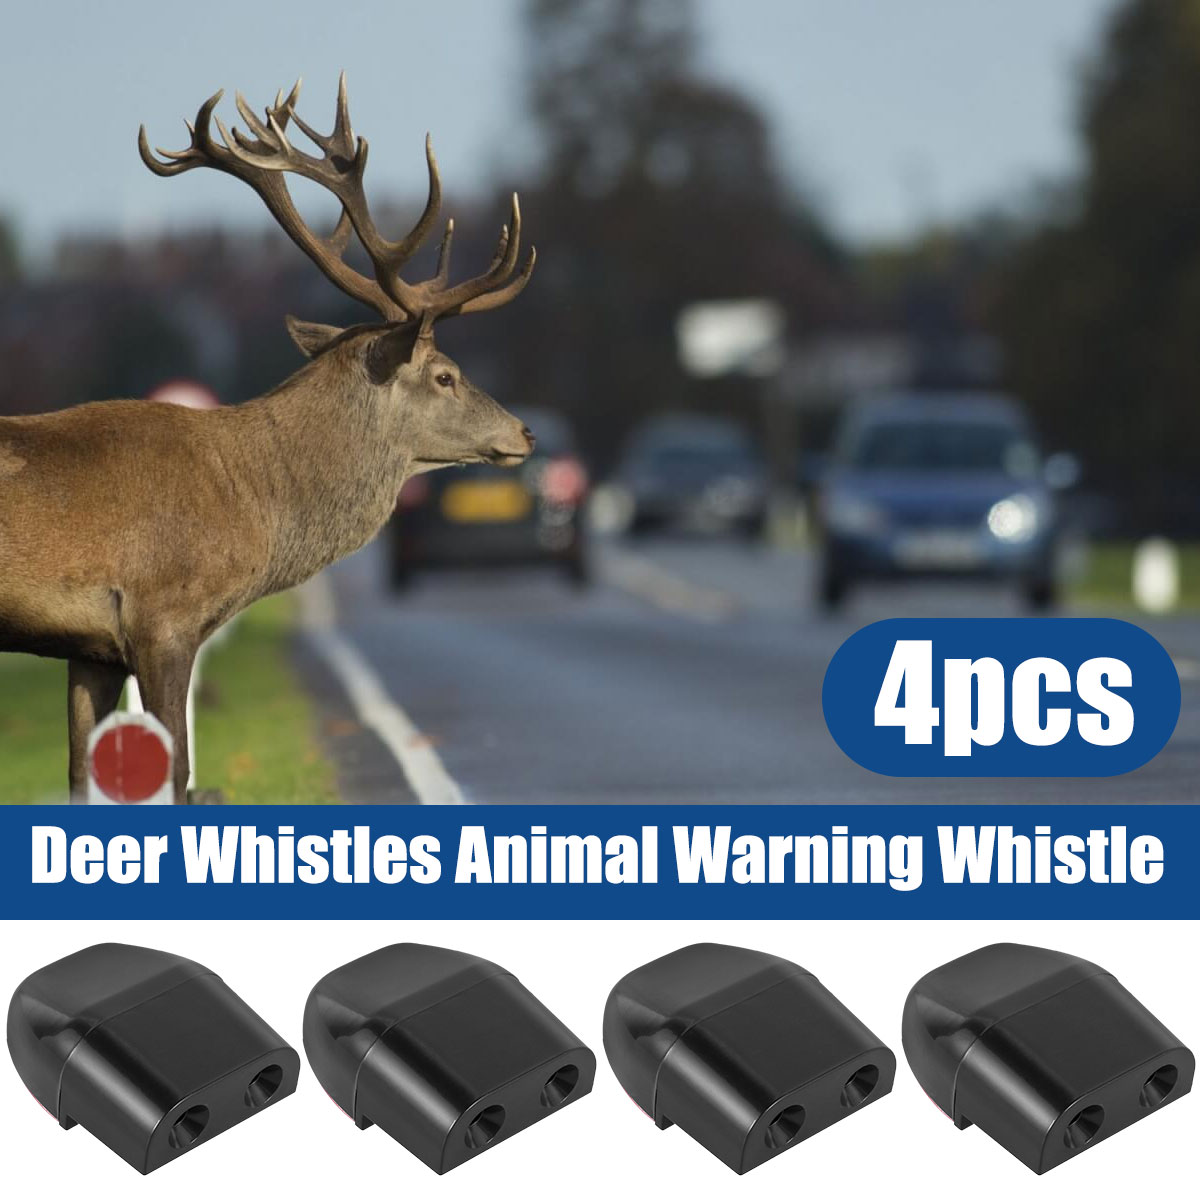 4 Pcs Deer Whistles Animal Warning Whistle Safety Cars